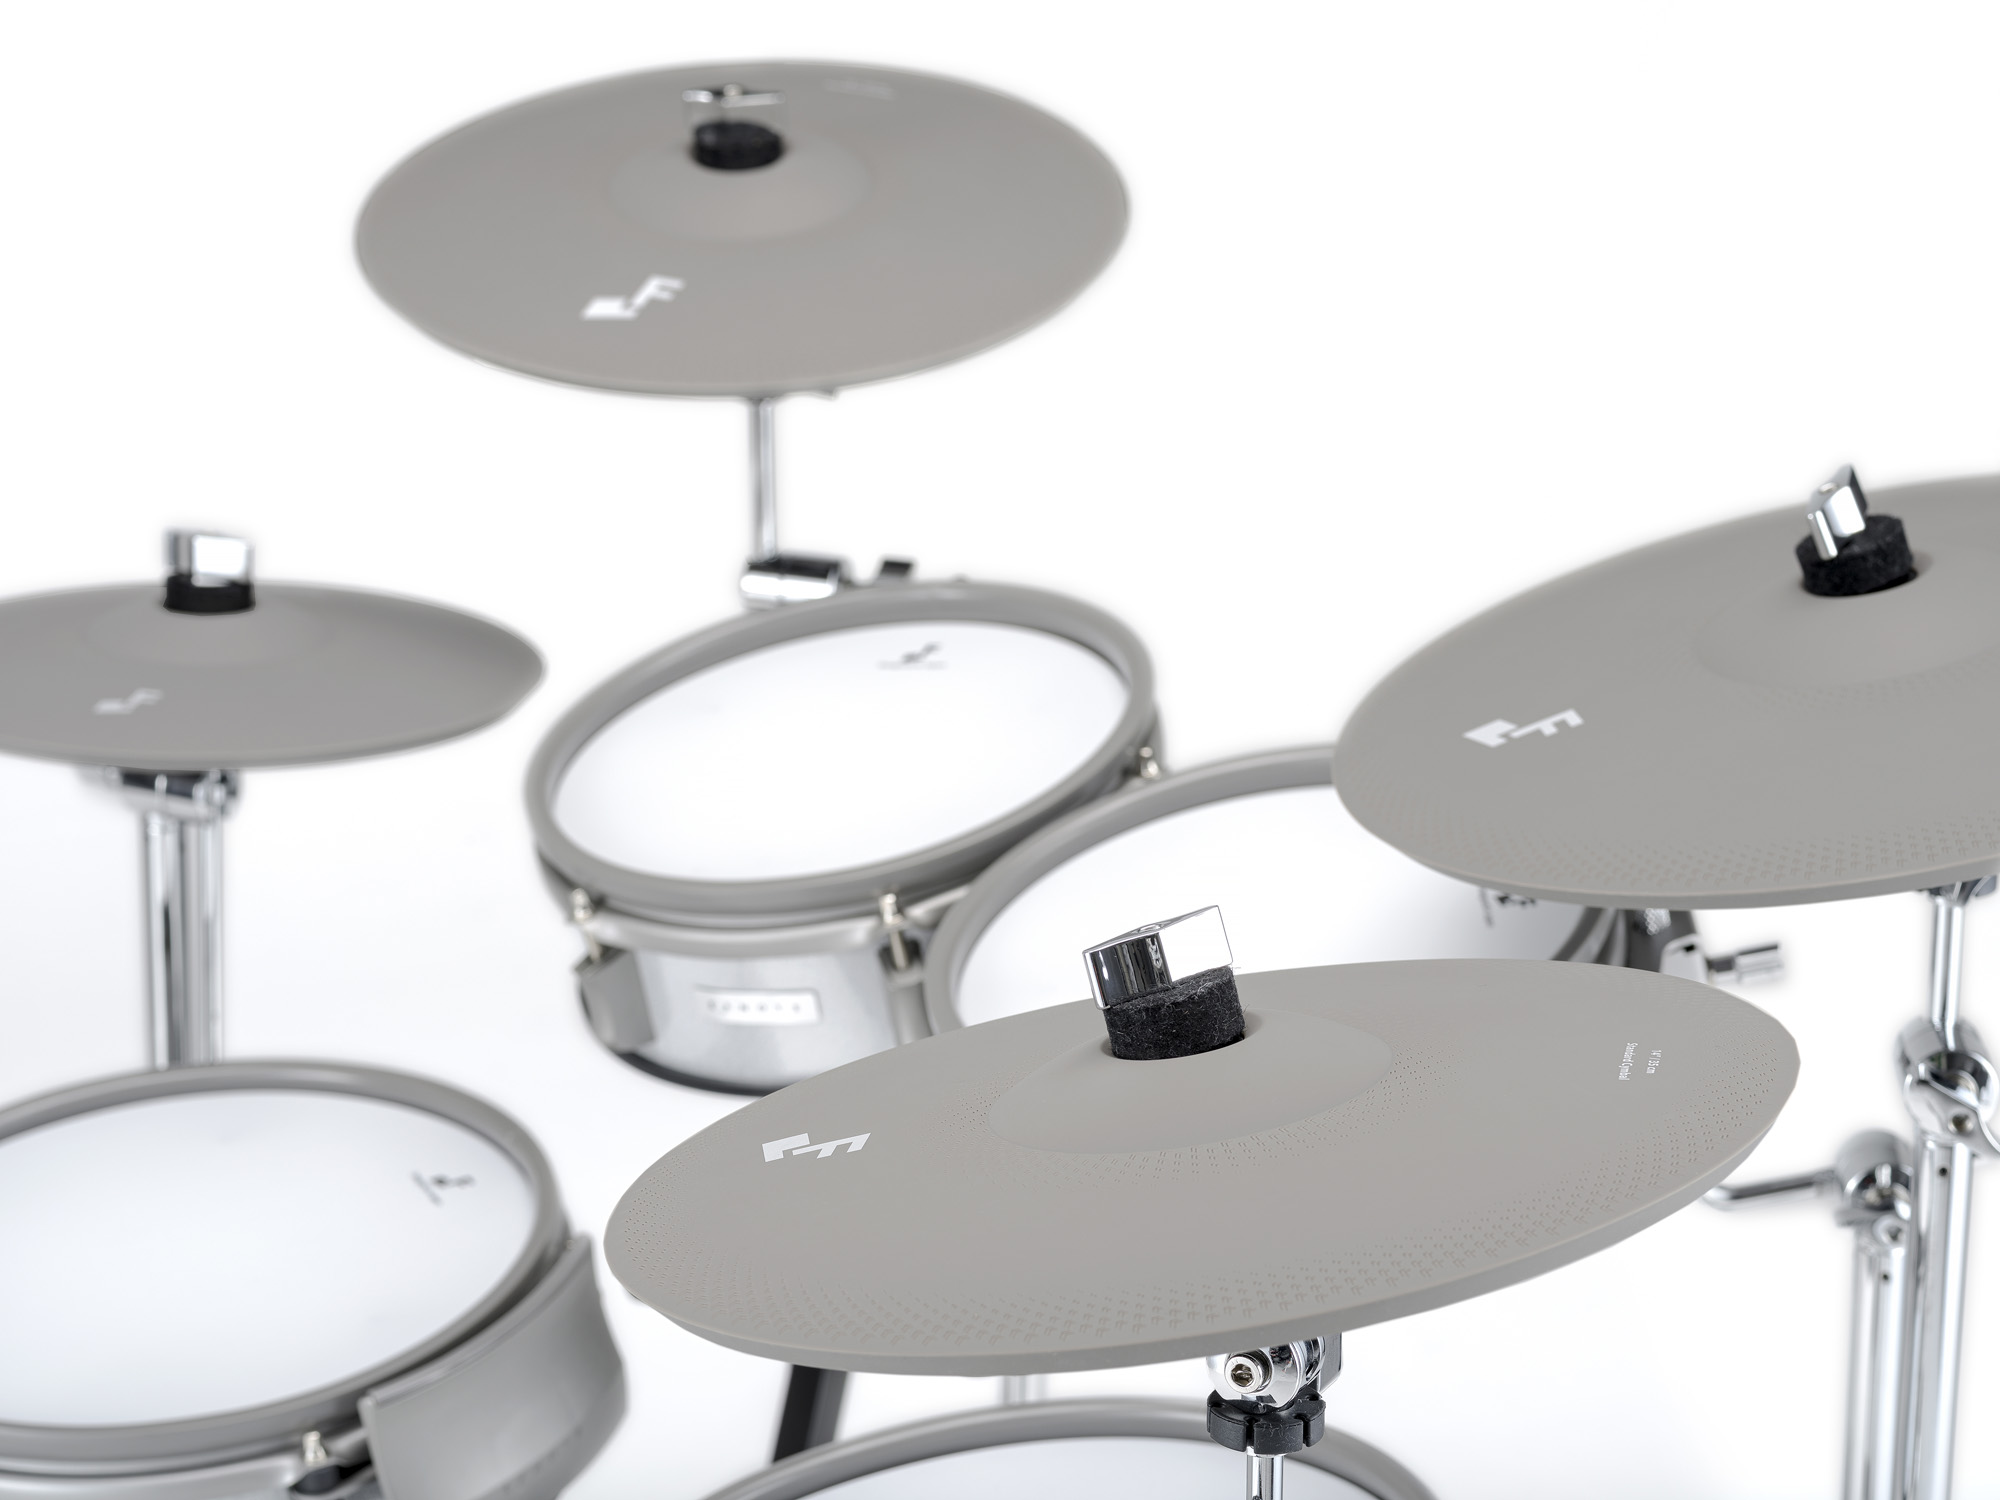 Efnote Efd3 Drum Kit - Electronic drum kit & set - Variation 1